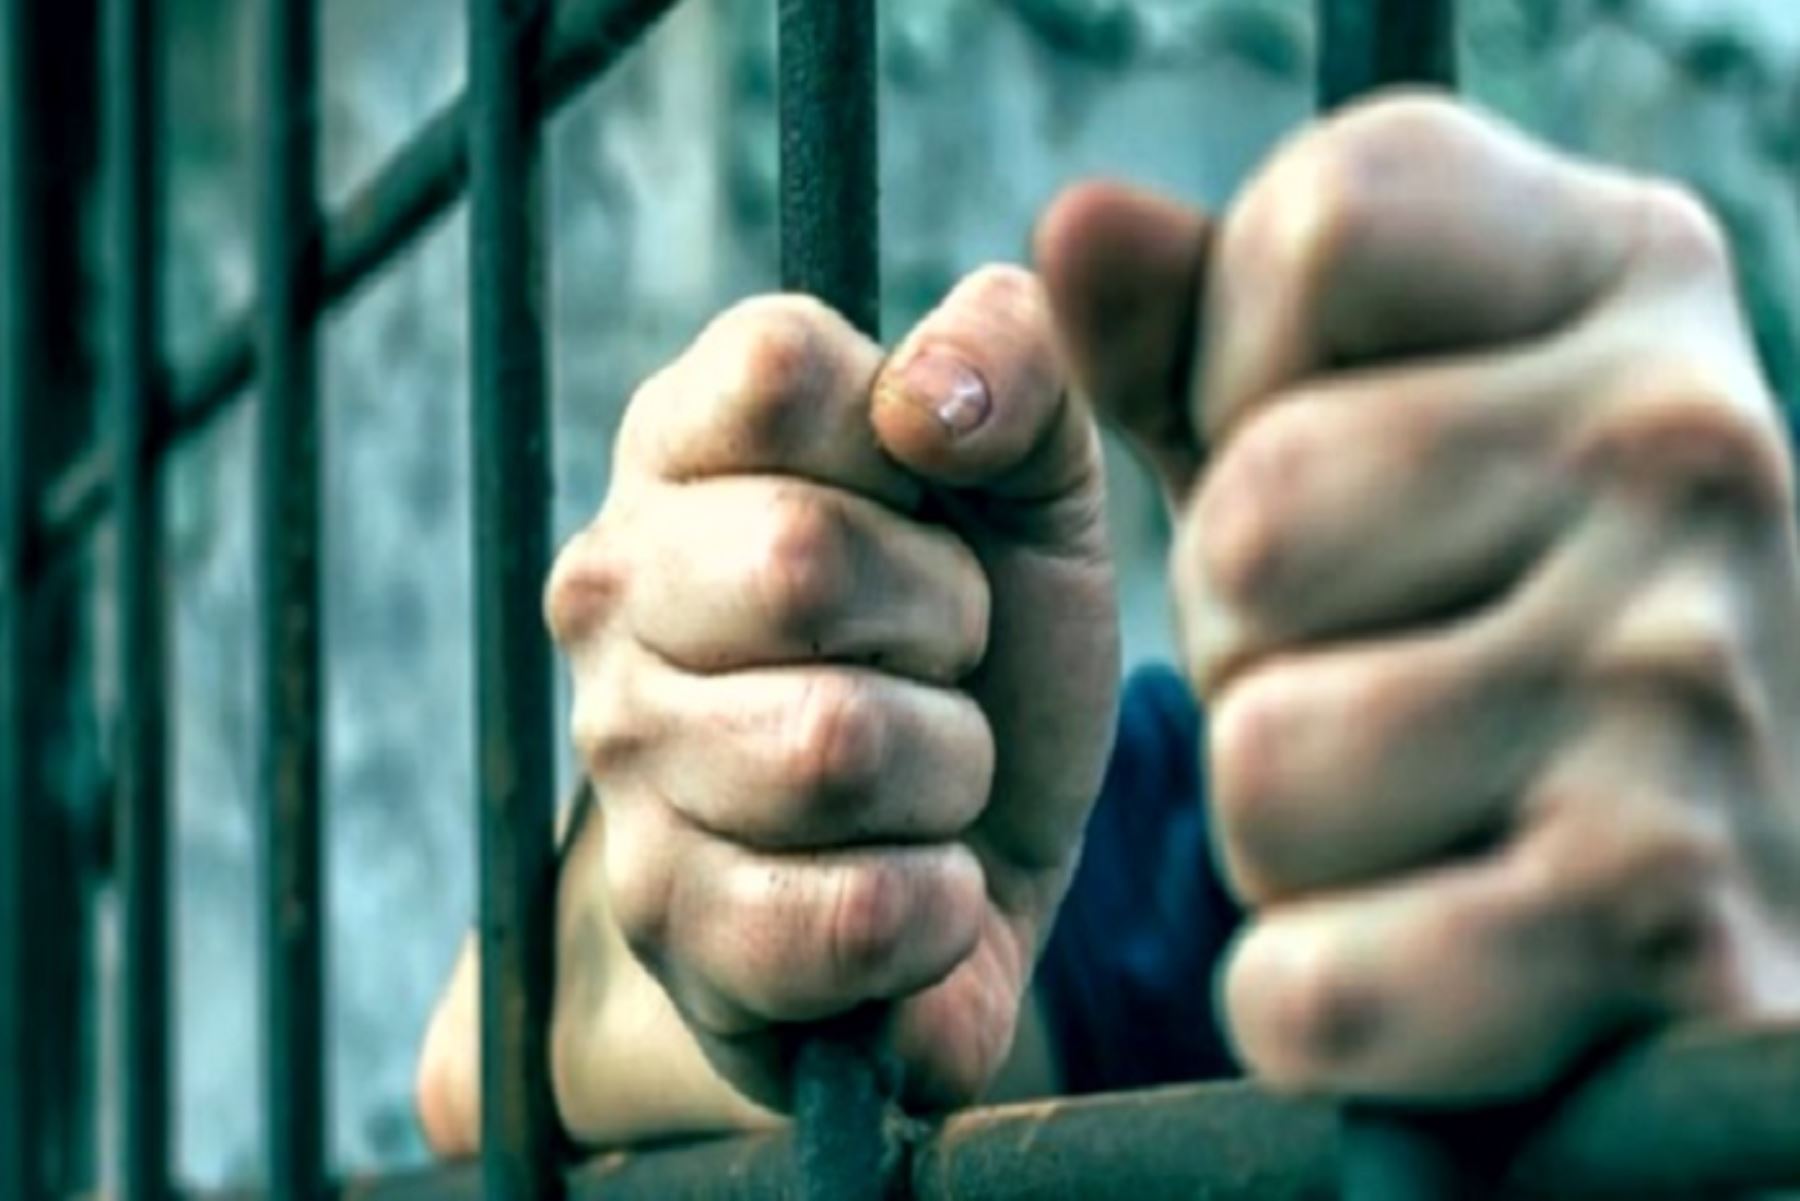 Jueza ordena prisión preventiva para presunto asesino de profesora en Sechura